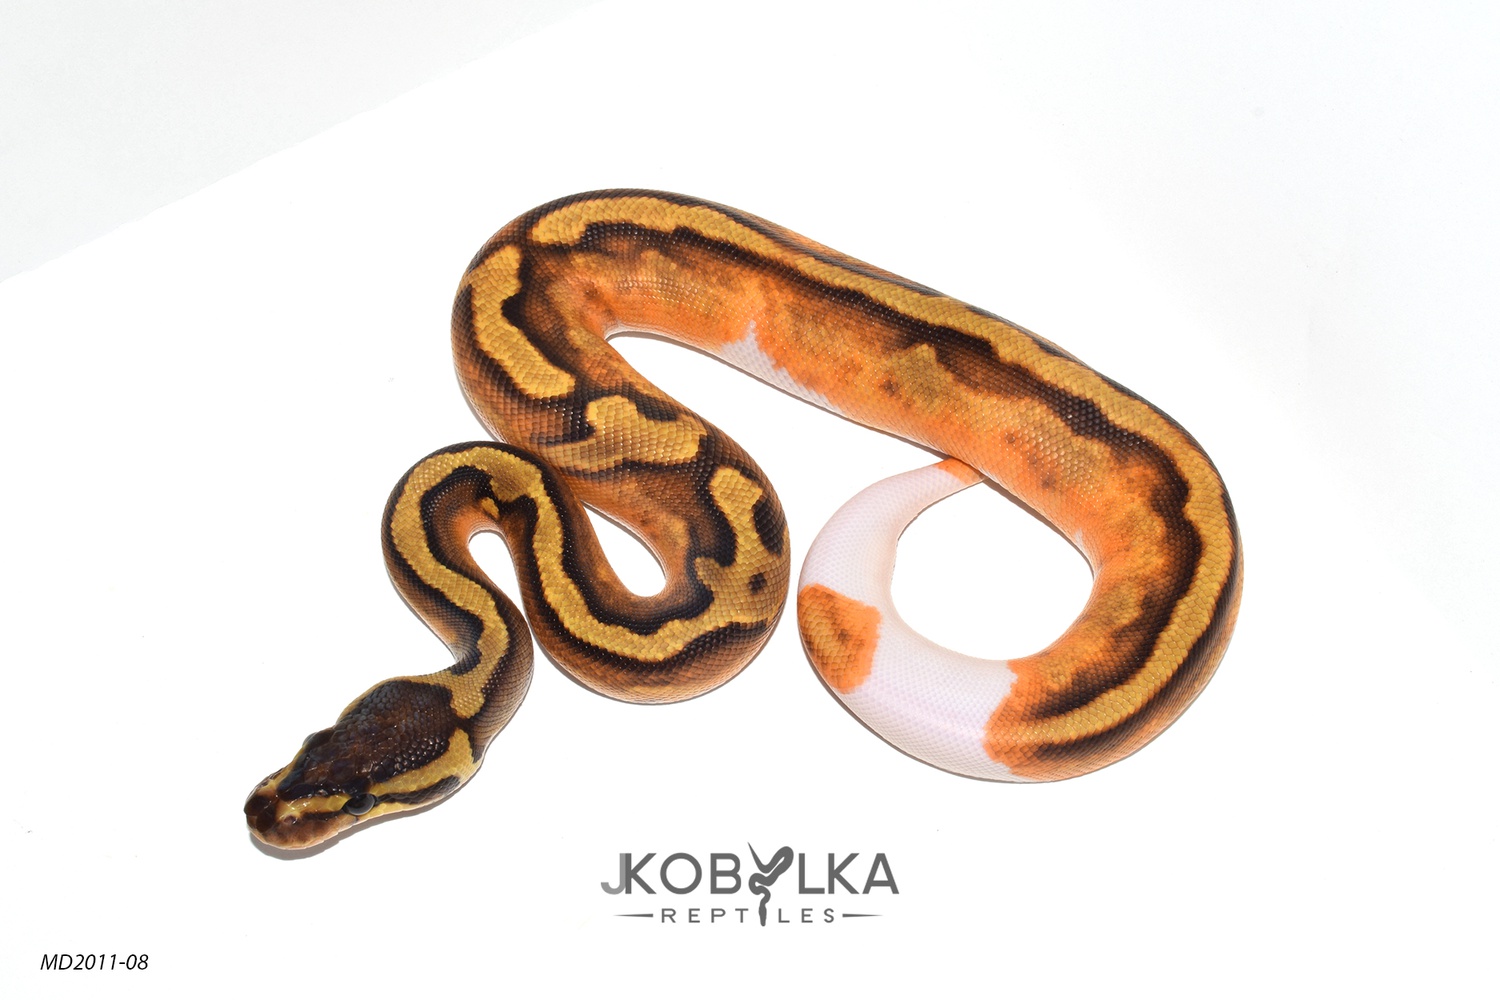 Enchi GeneX Pied Ball Python by J. Kobylka Reptiles